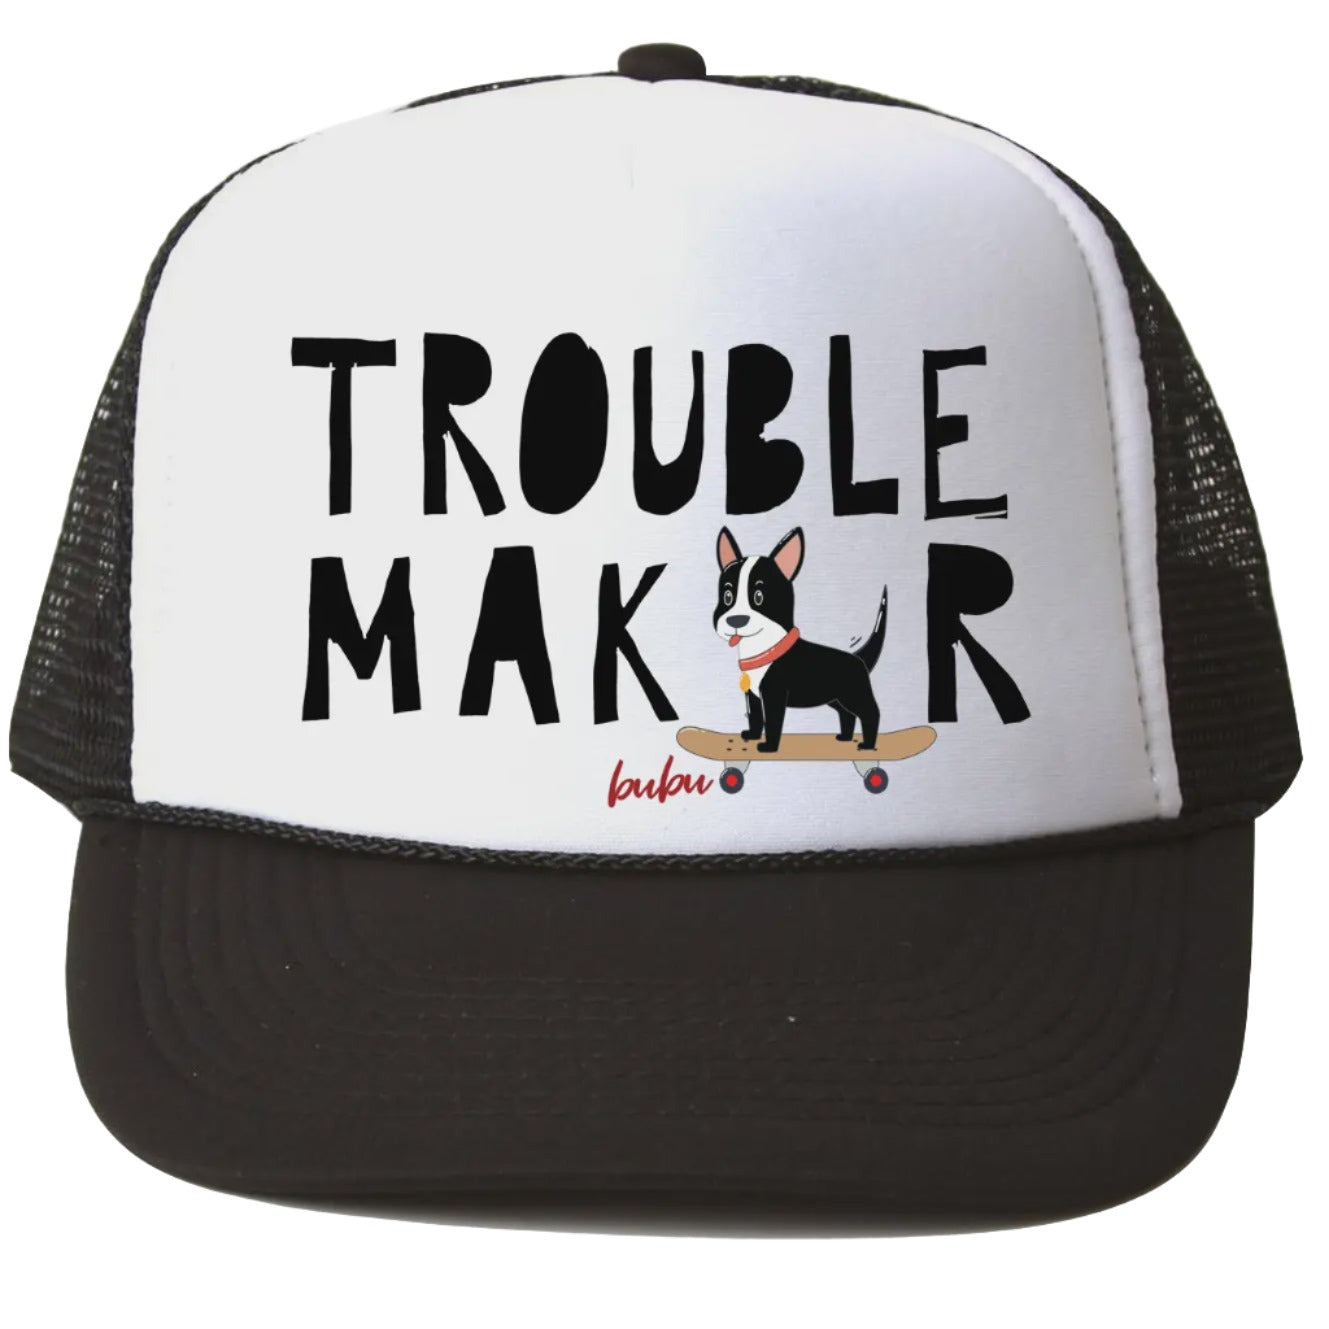 Trouble Maker Trucker Hat